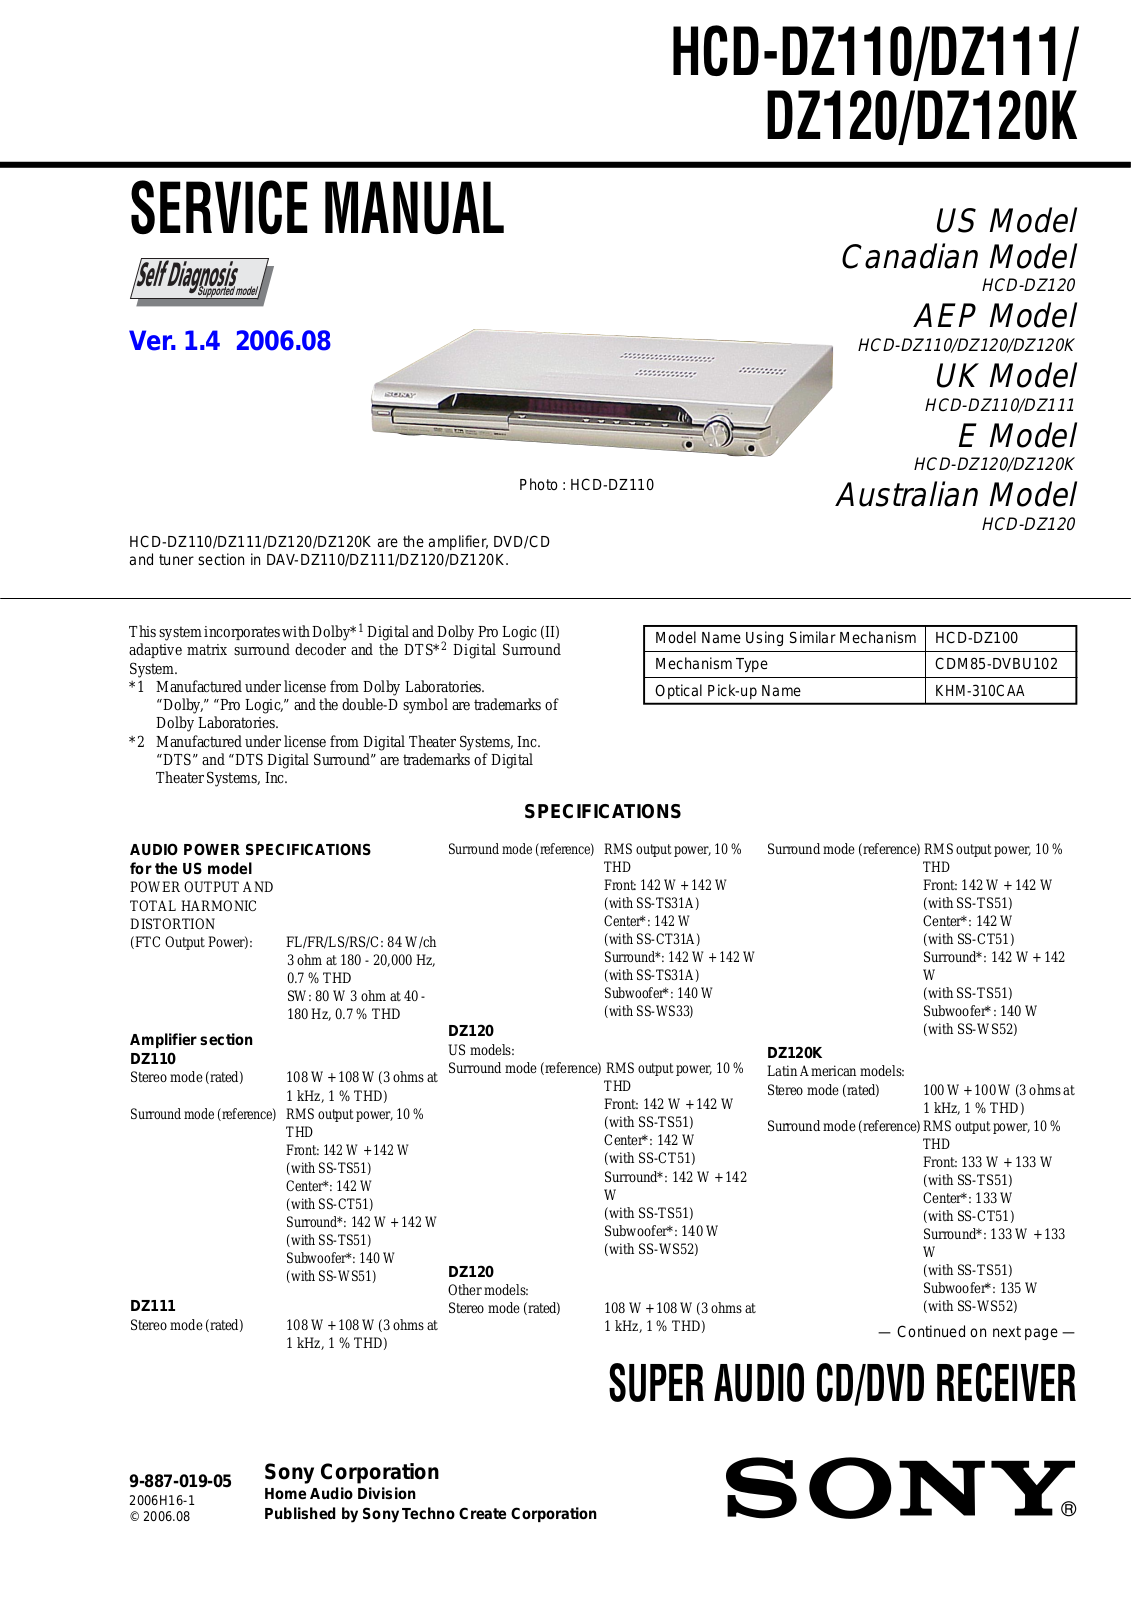 Sony HCDDZ-110, HCDDZ-111, HCDDZ-120, HCDDZ-120-K Service manual